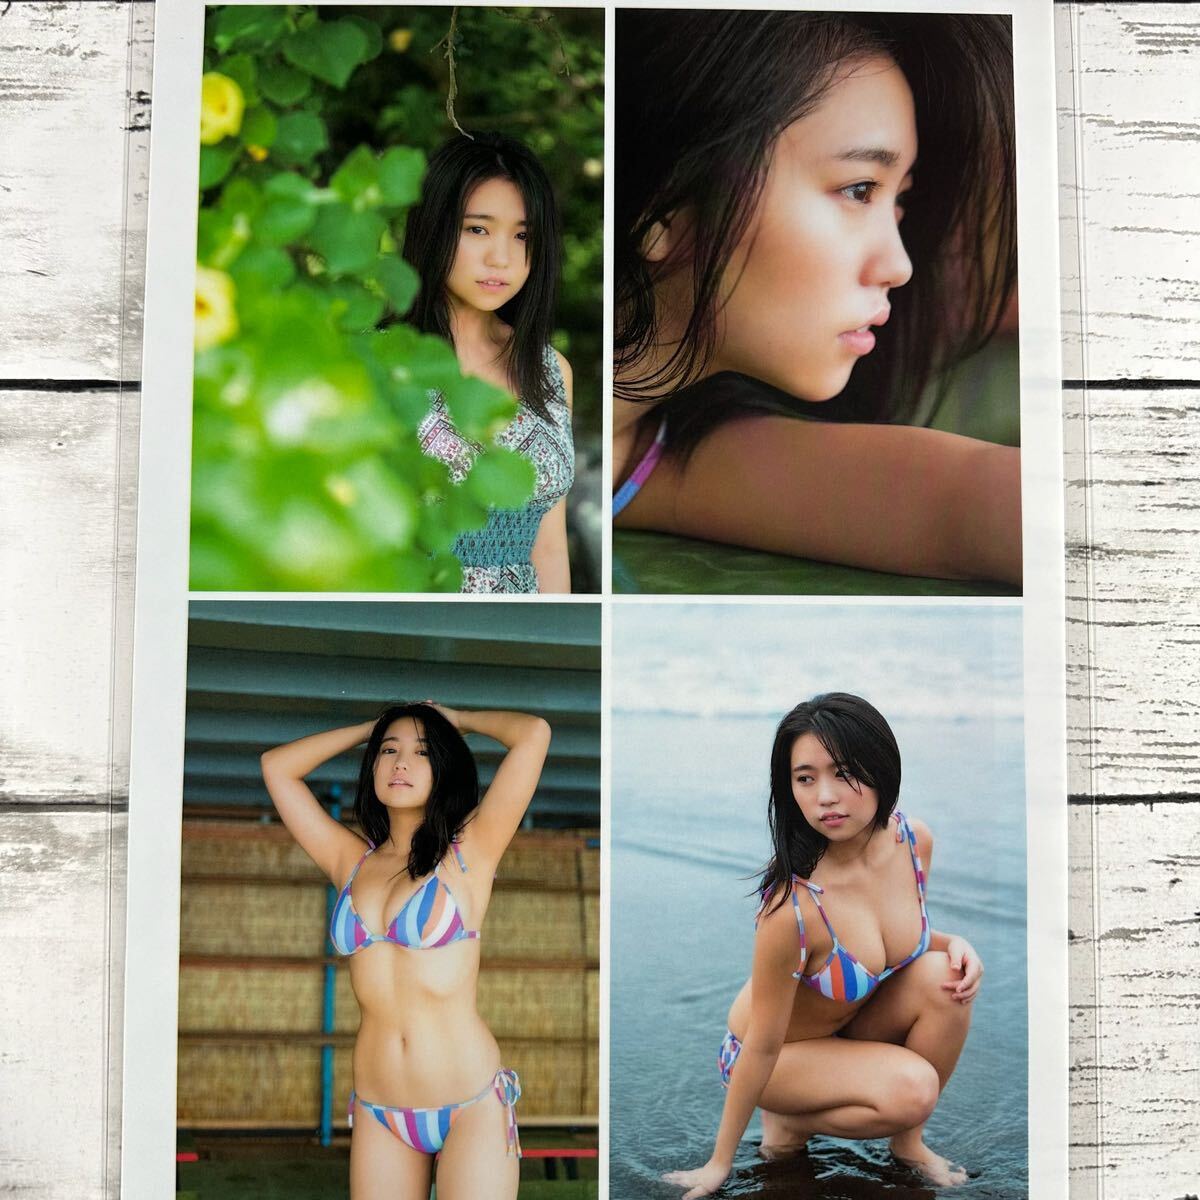 [ высокое качество ламинирование отделка ][ большой . super .] ENTAME 2019 год 10 месяц журнал вырезки 4P A4 плёнка купальный костюм bikini model актер женщина super 